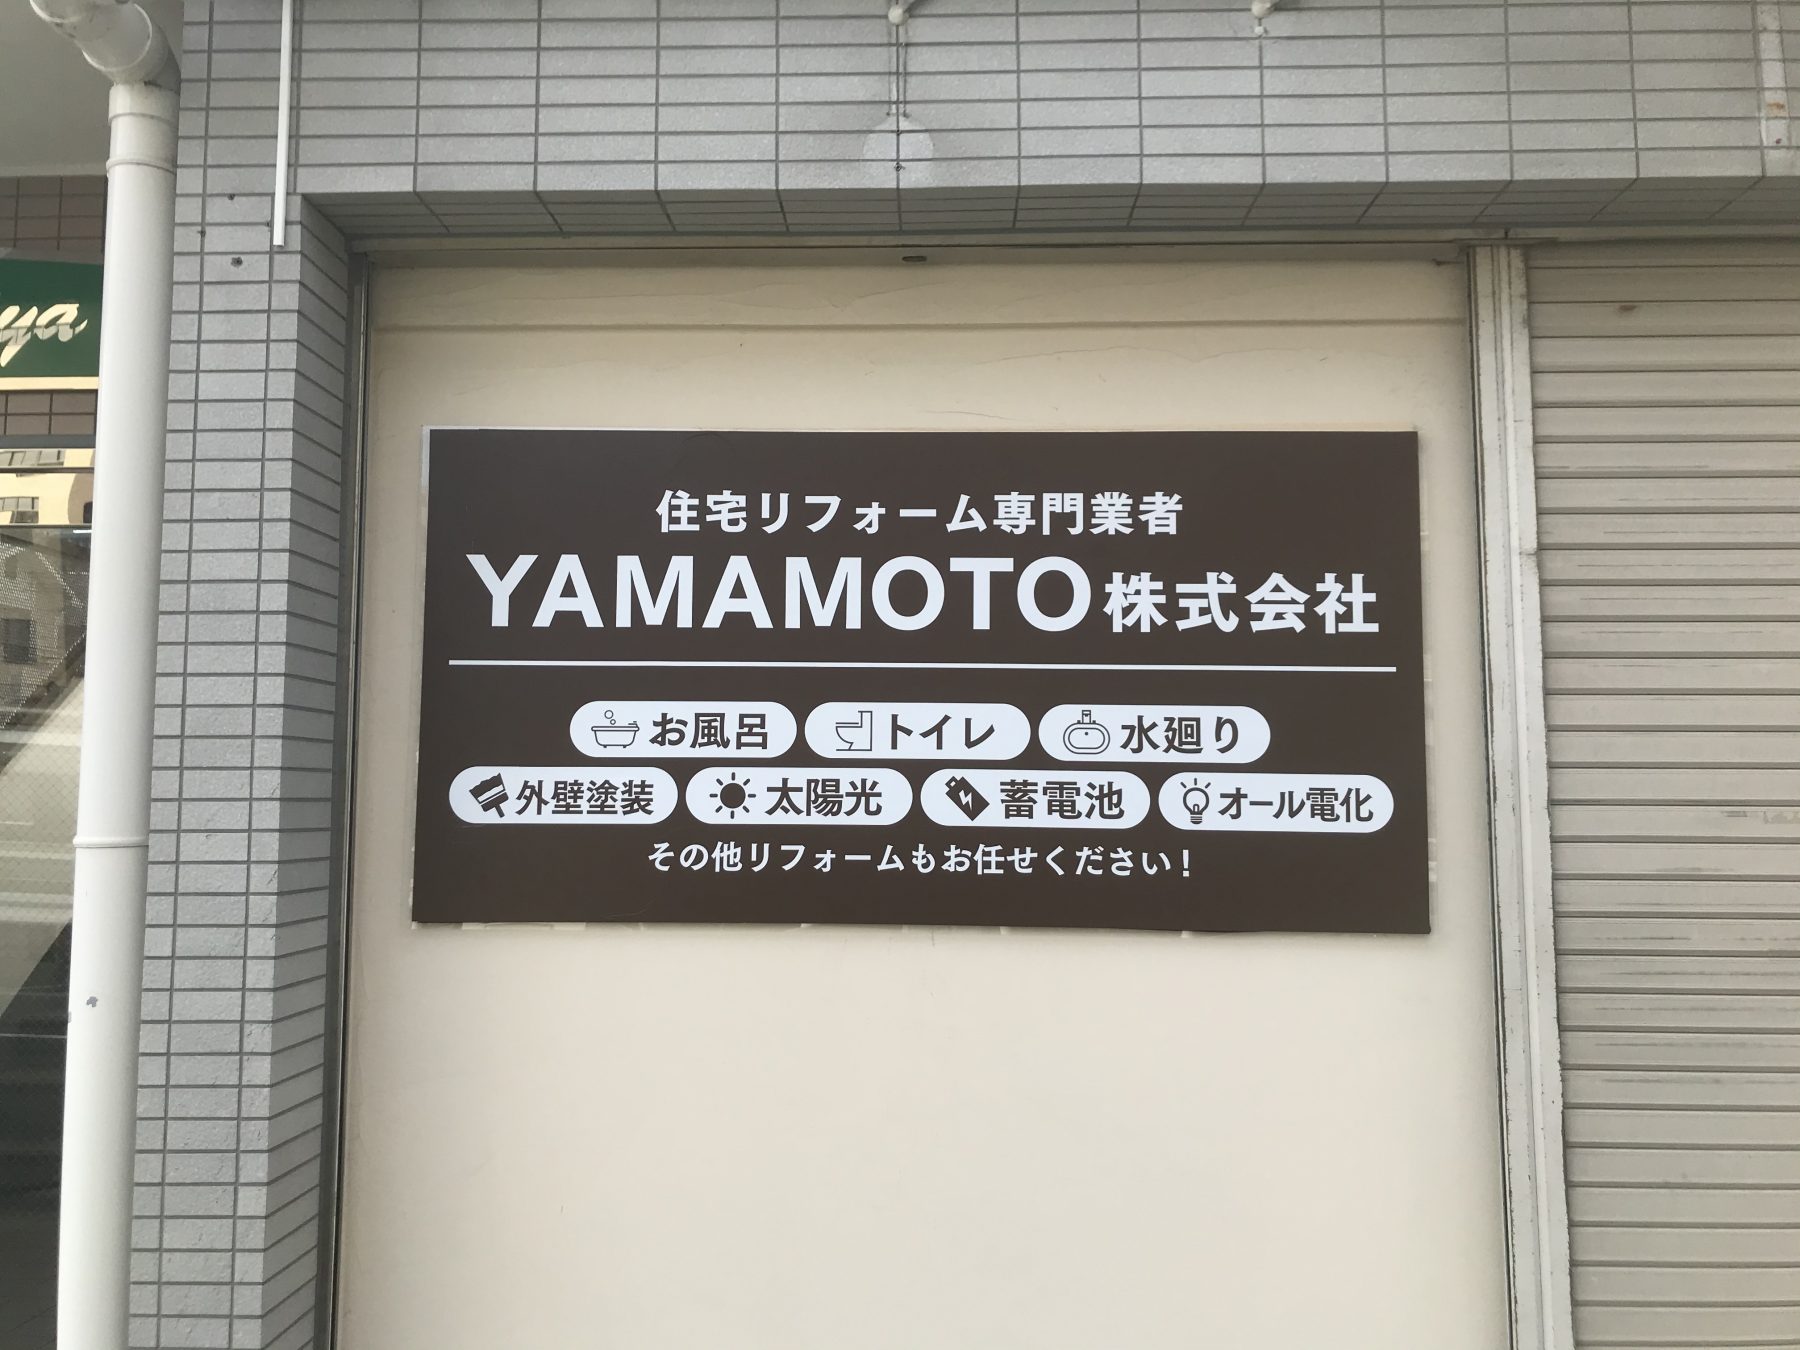 ☆祝オープン☆YAMAMOTO株式会社さん☆地域密着型でサポートするリフォーム専門の会社です!!